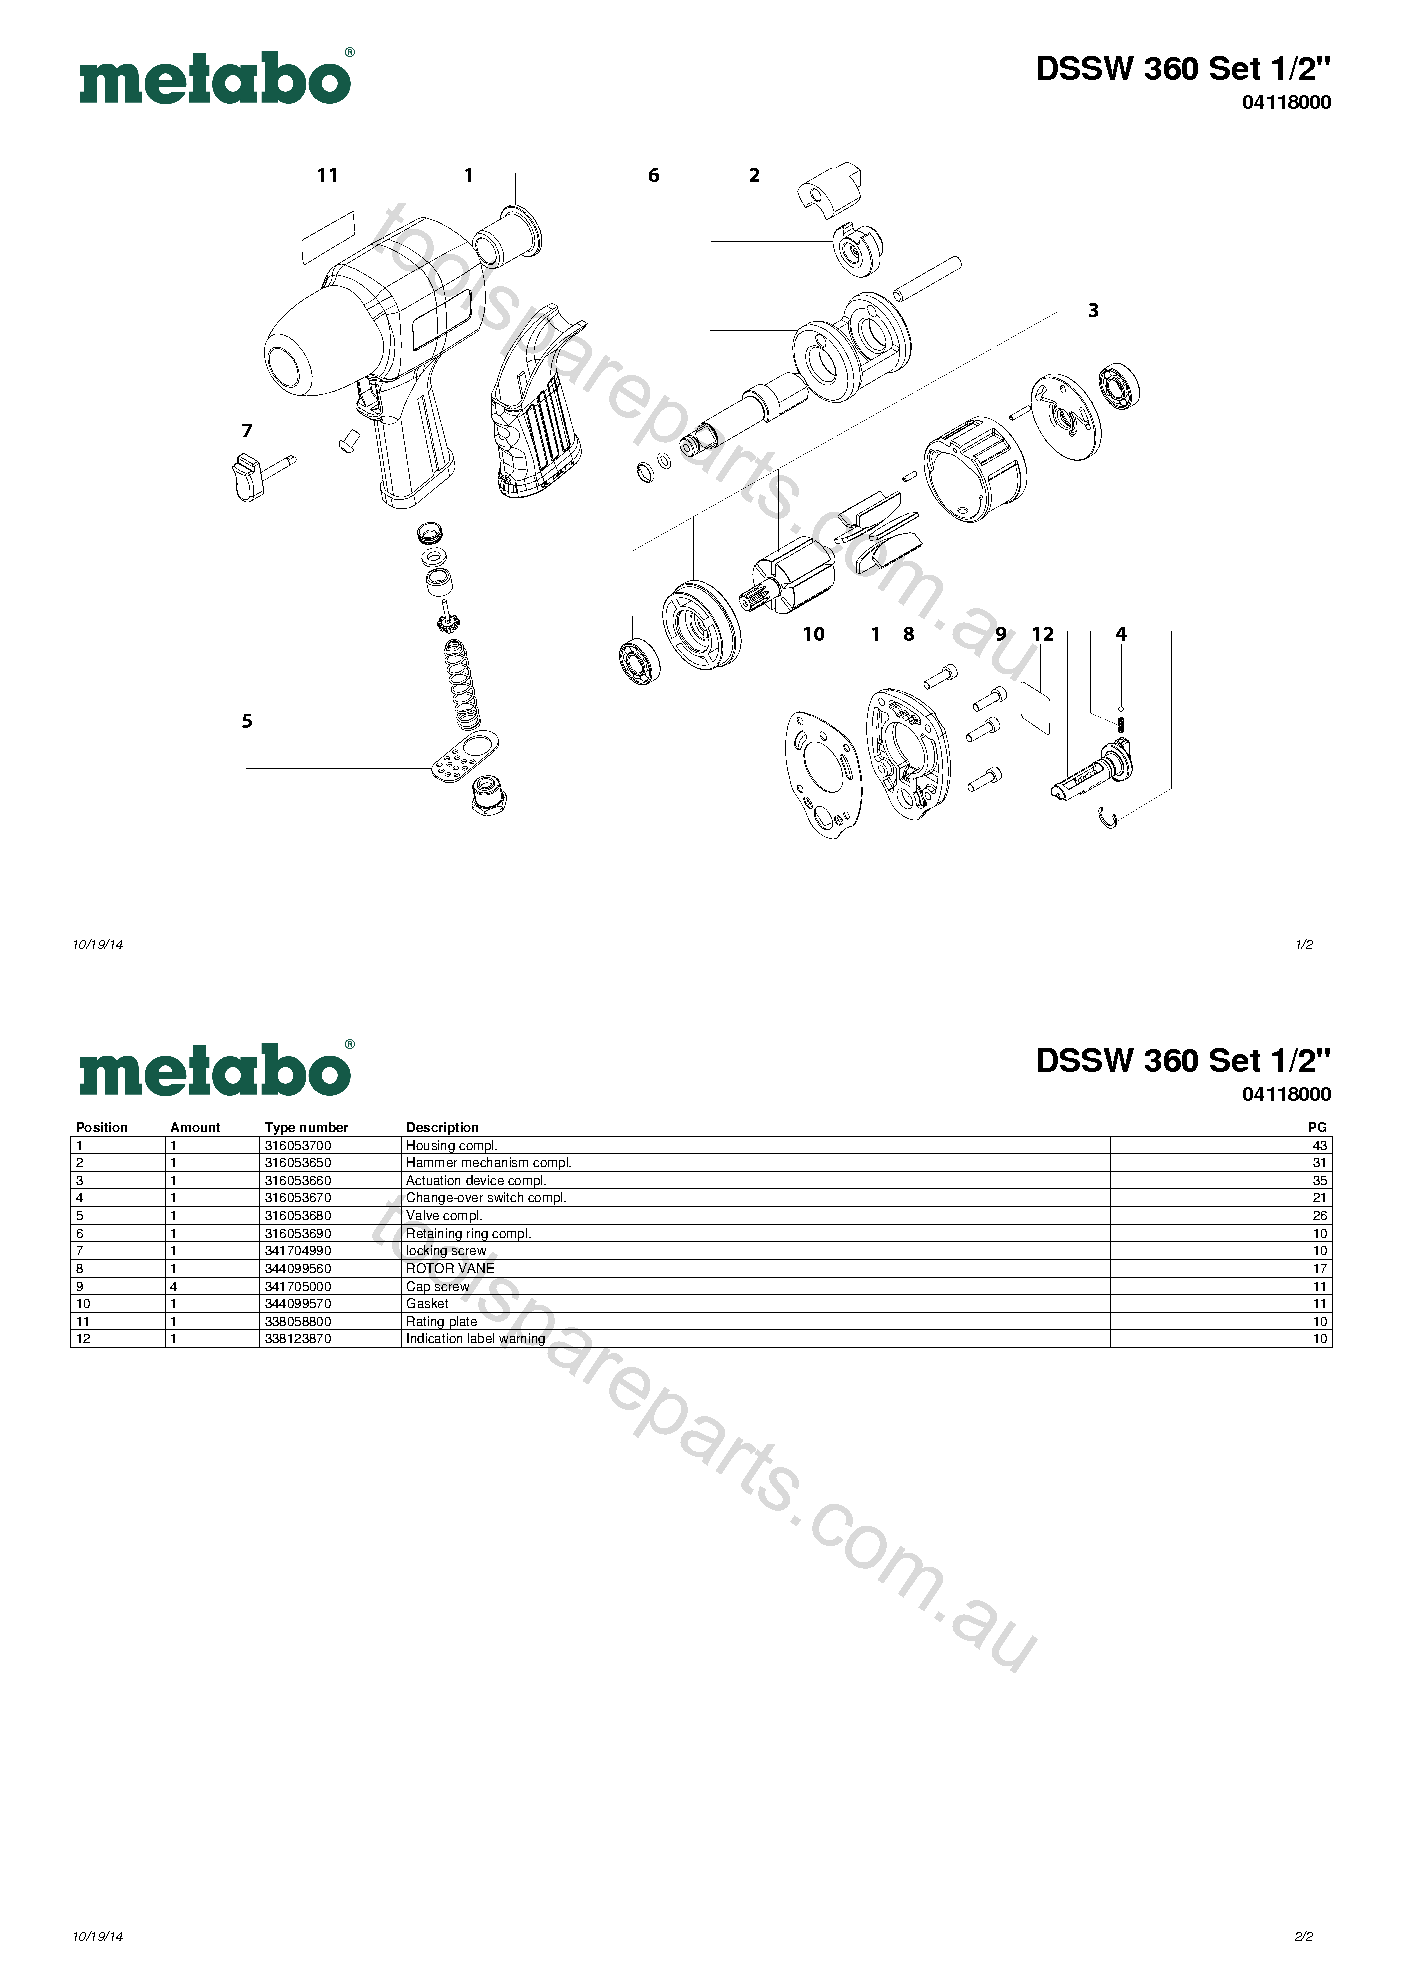 Metabo DSSW 360 Set 1/2